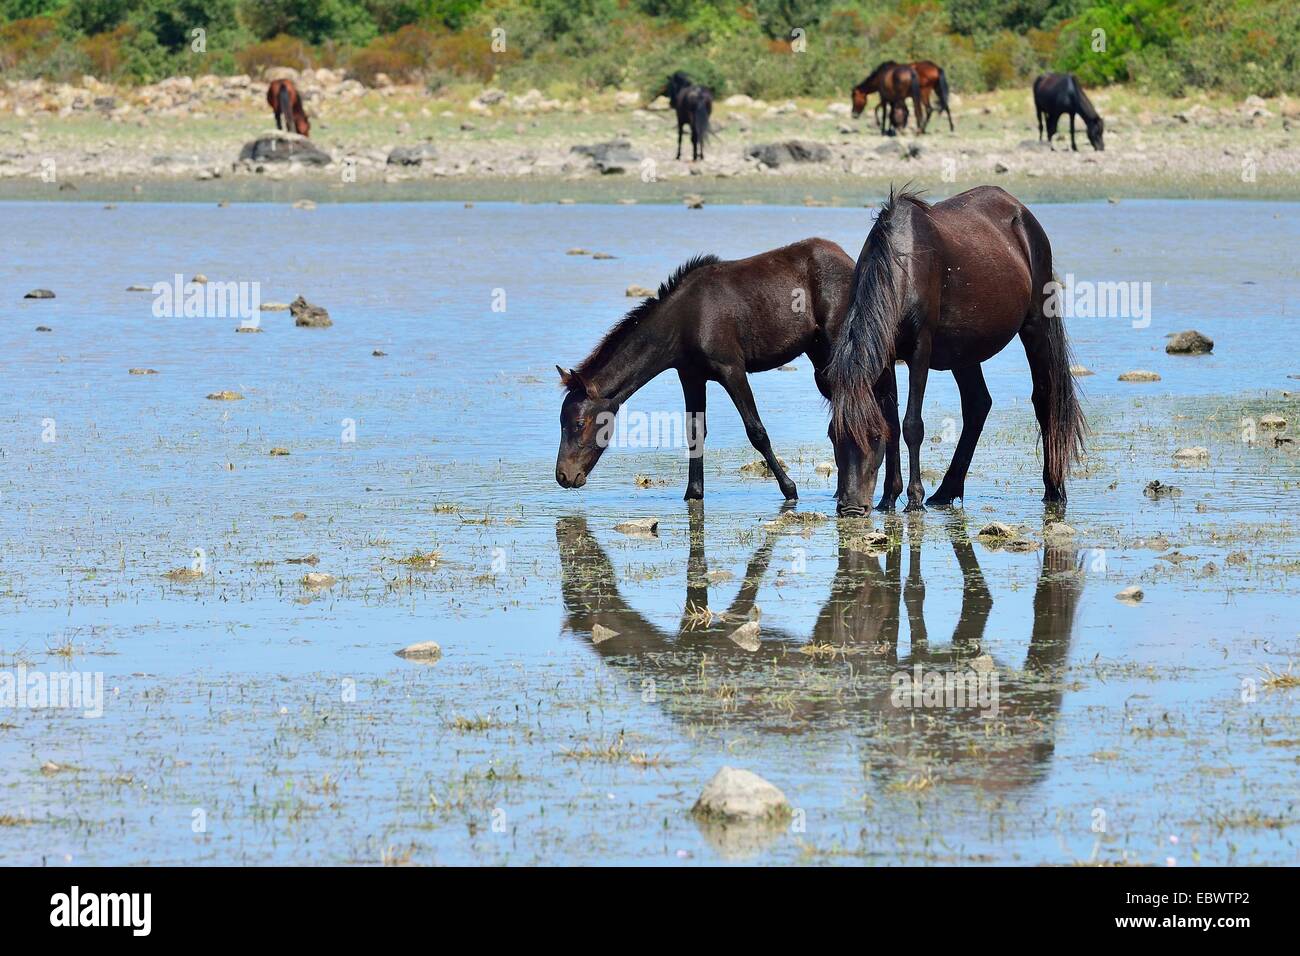 Les chevaux sauvages, mare et son poulain, à l'étang Pauli Majori, plateau de Giara di Gesturi, Medio Campidano, Sardaigne, Italie Province, Europe Banque D'Images